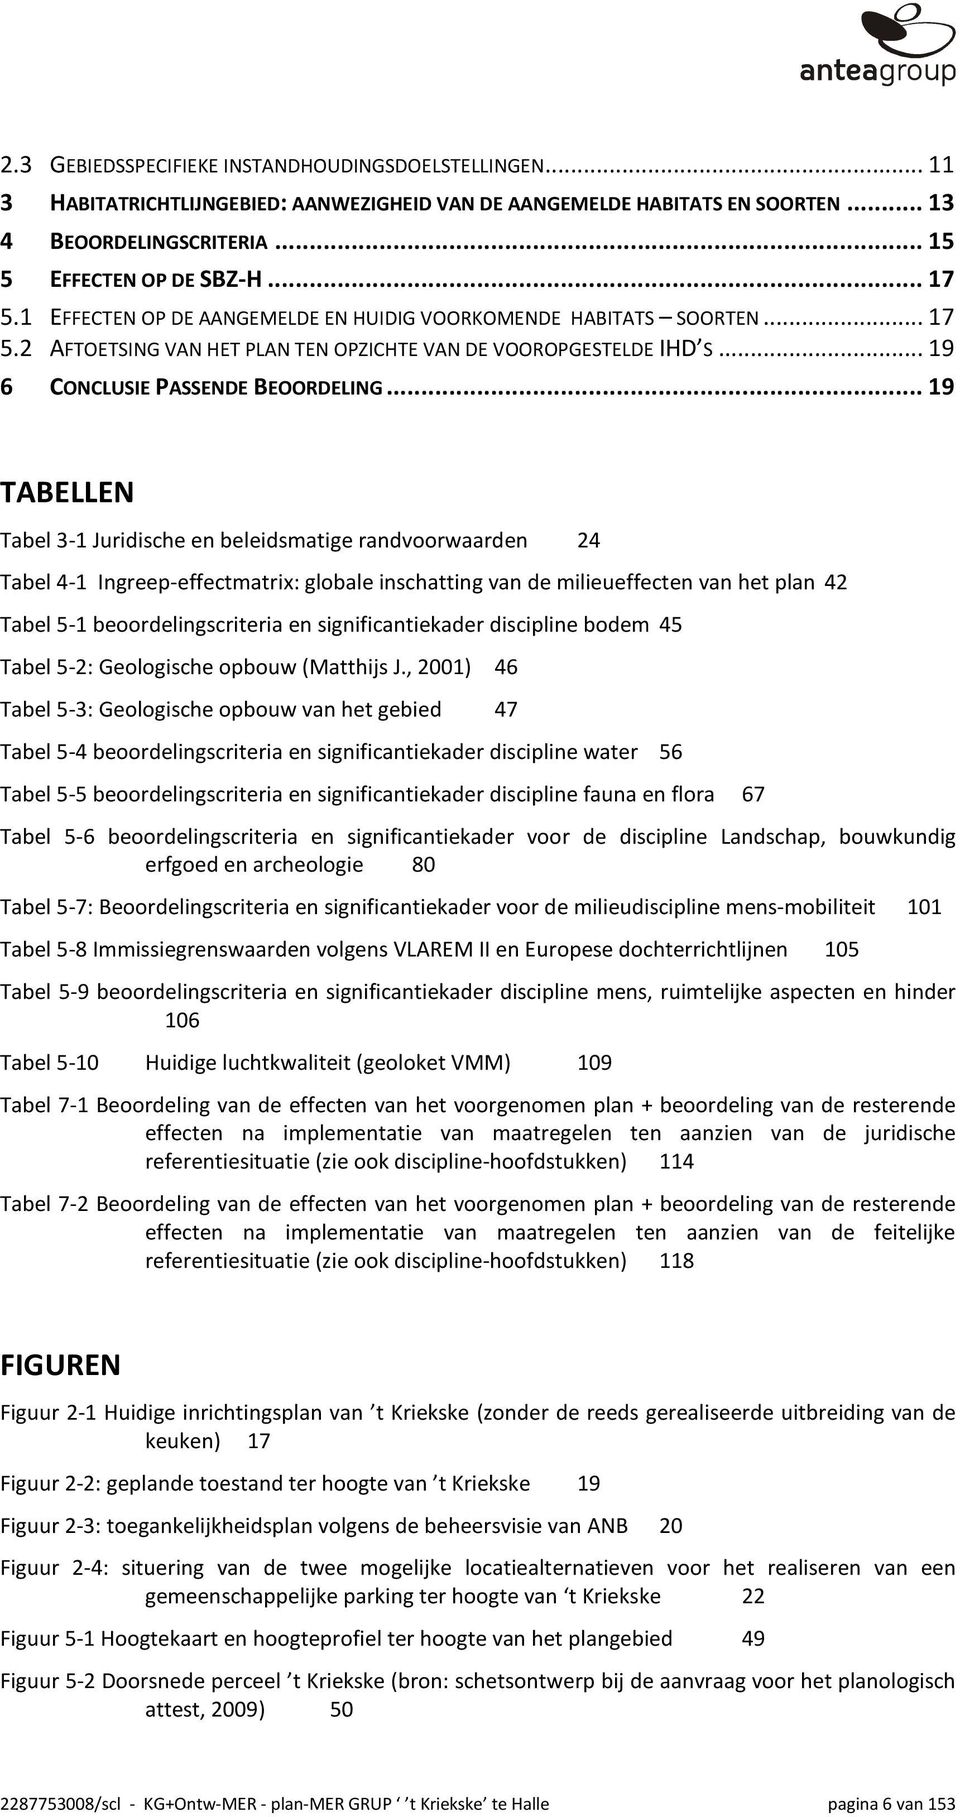 ..19 TABELLEN Tabel 3-1 Juridische en beleidsmatige randvoorwaarden 24 Tabel 4-1 Ingreep-effectmatrix: globale inschatting van de milieueffecten van het plan 42 Tabel 5-1 beoordelingscriteria en